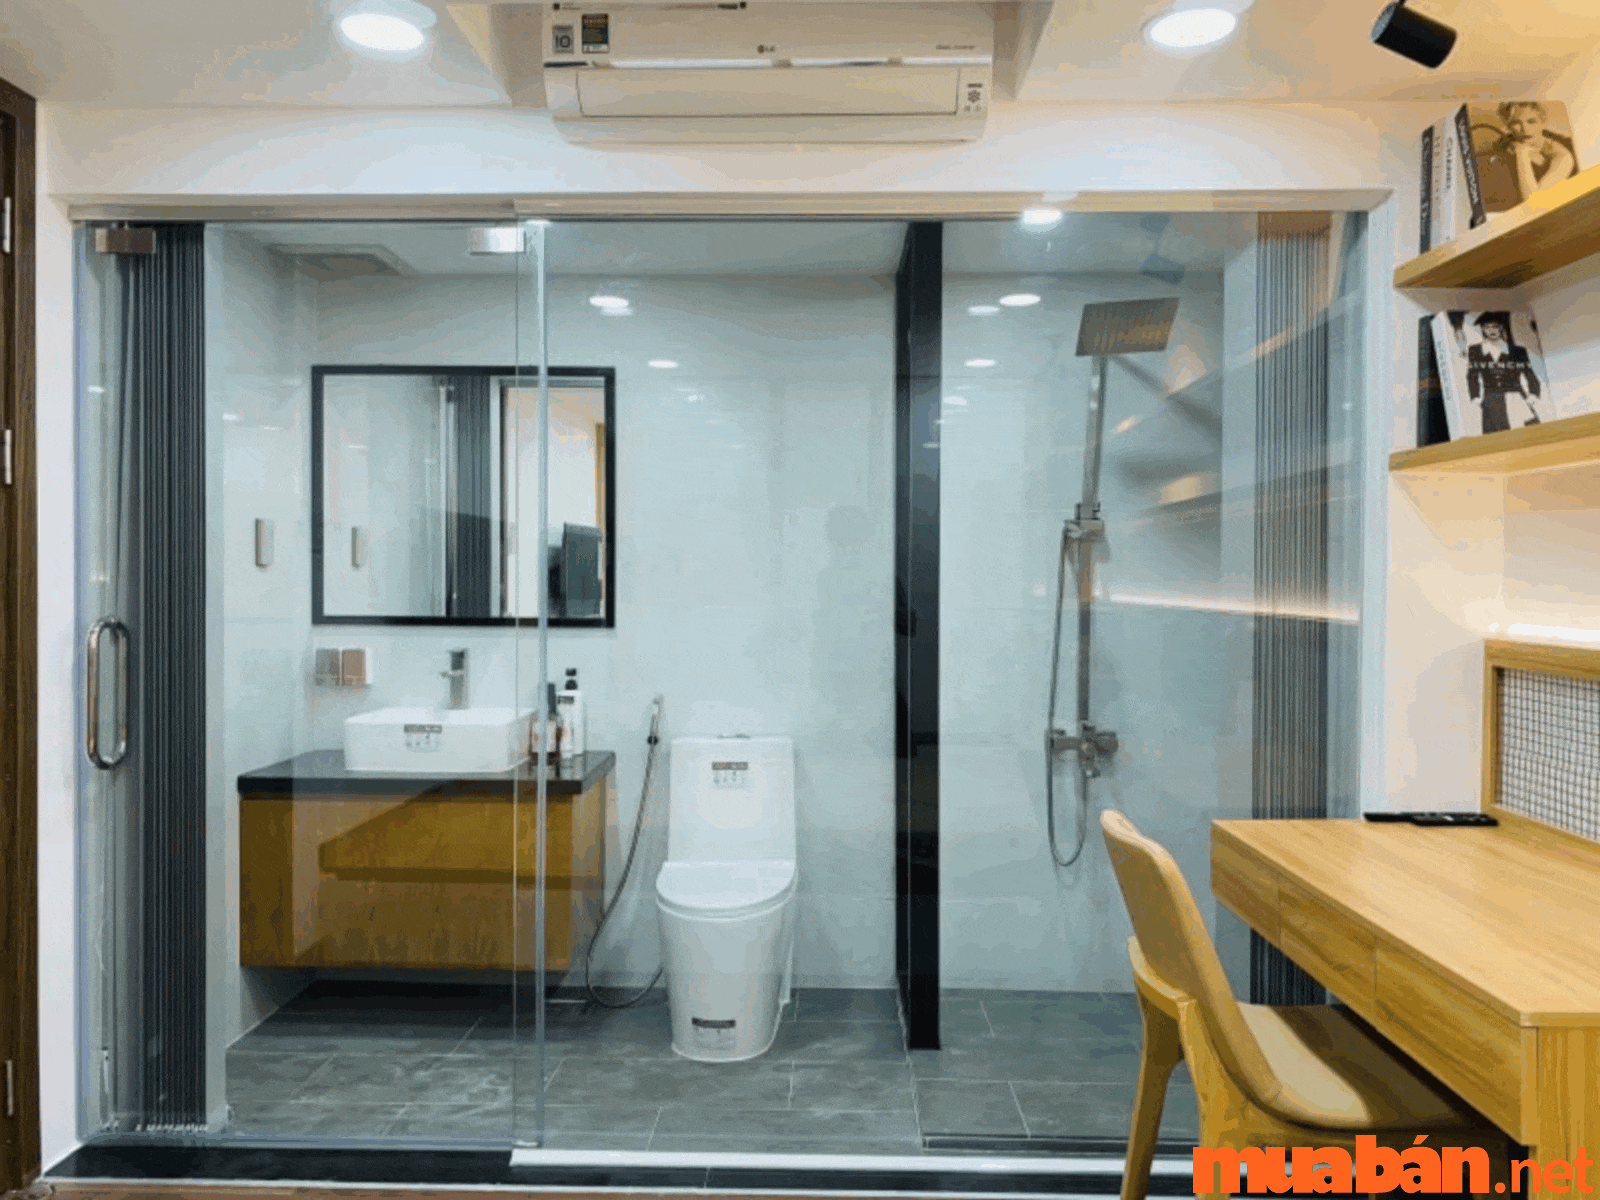 Cửa kính phòng tắm lùa là mẫu cửa nhà tắm được ghép bằng những tấm kính cường lực